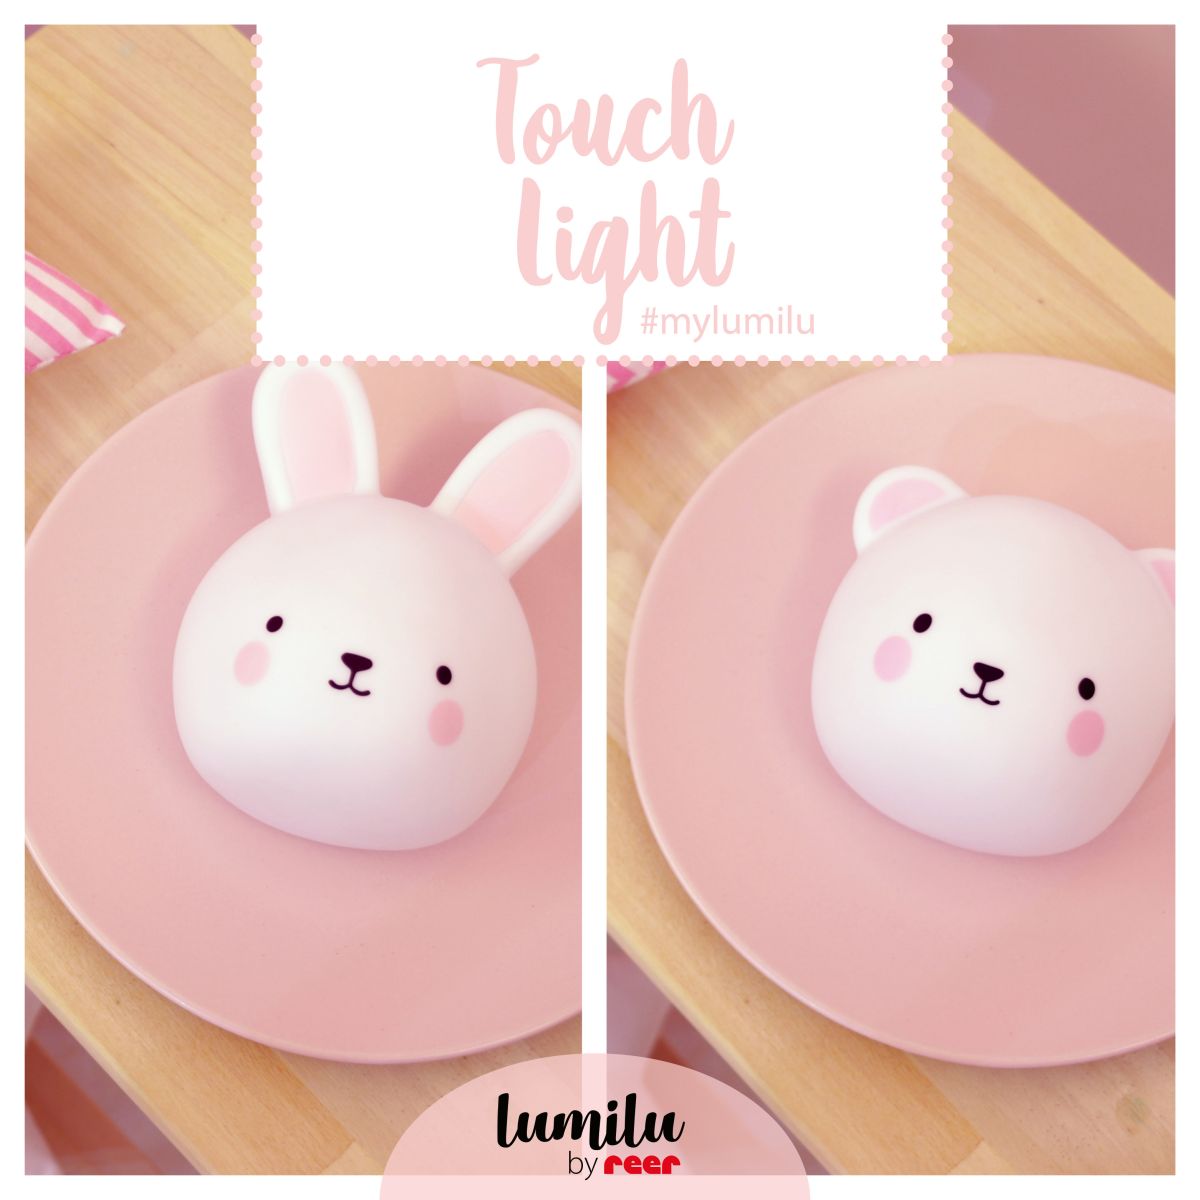 Bunny - Touch Light lumilu Nachtlicht - Geprüfte B-Ware